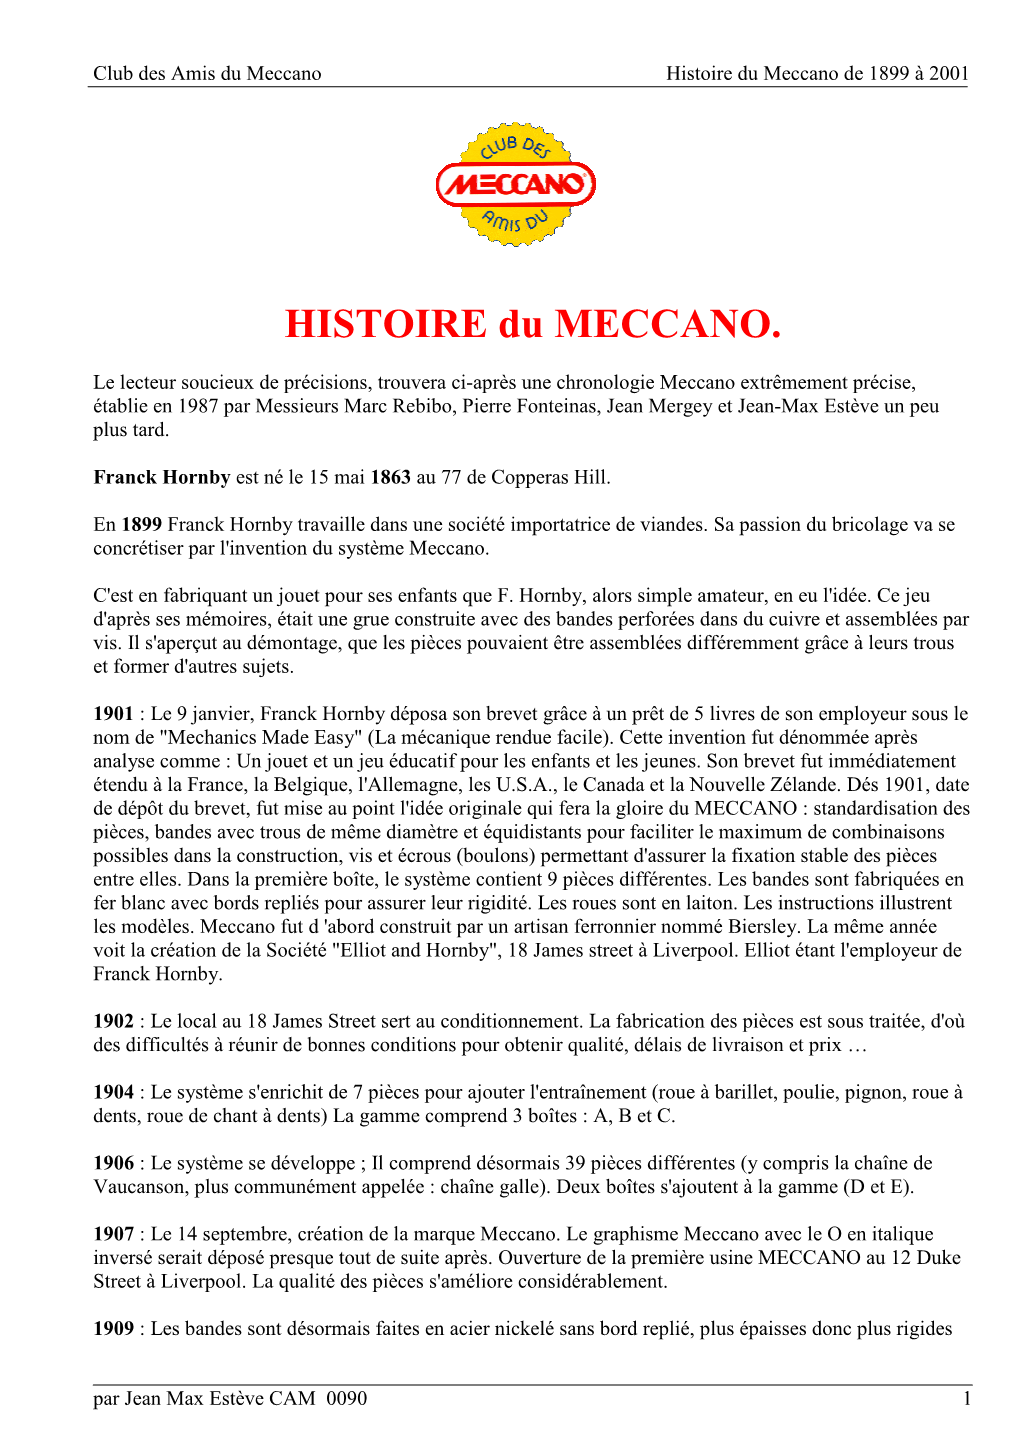 HISTOIRE Du MECCANO